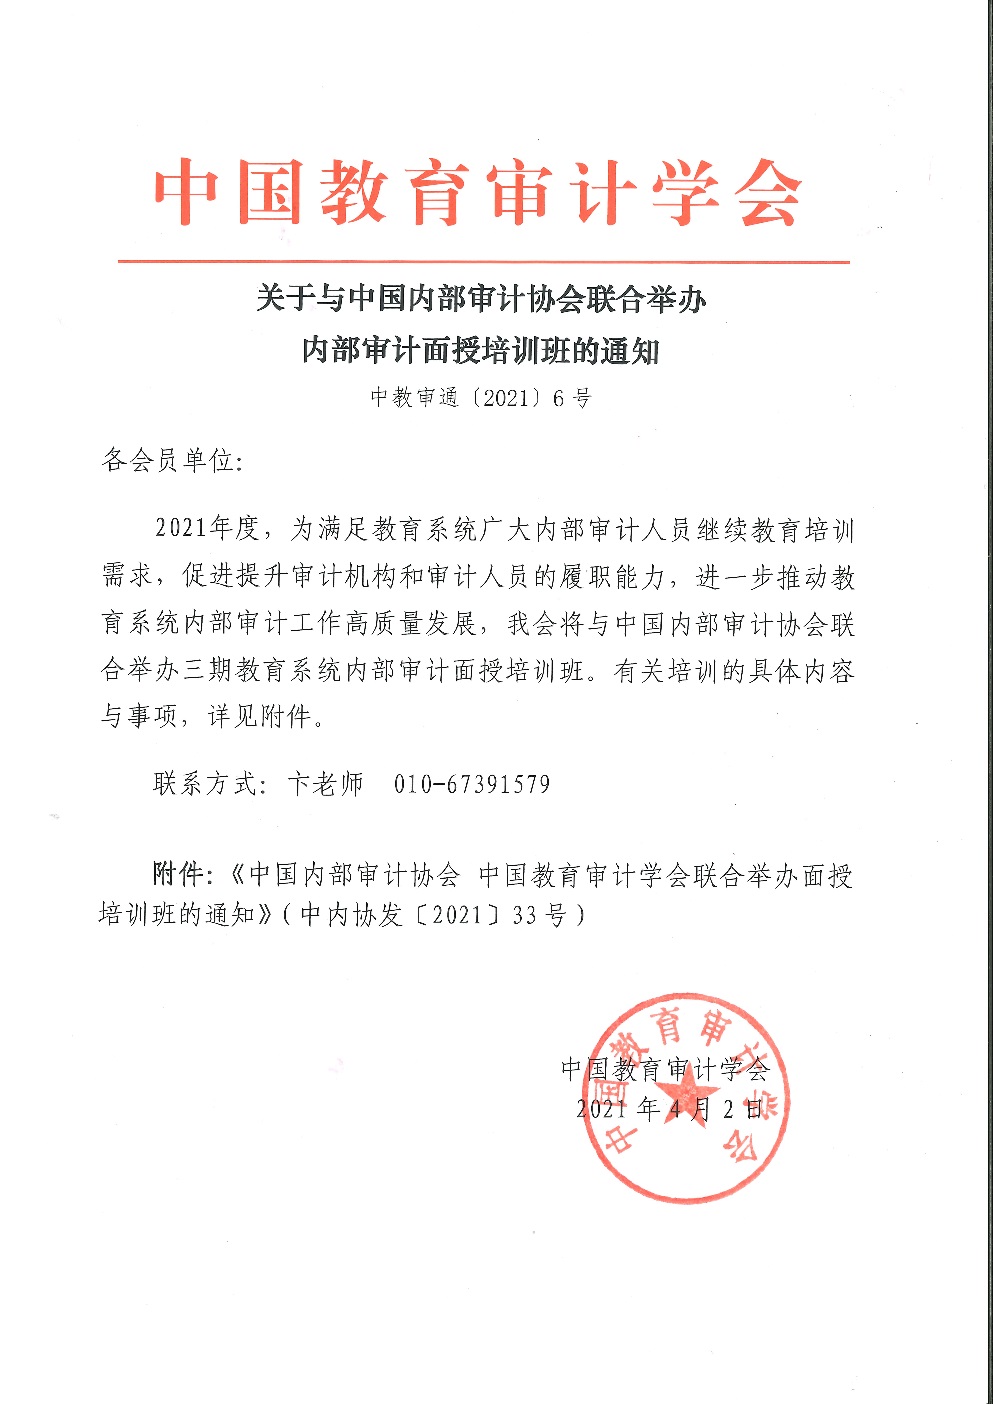 中教审通[2021]6号——关于与中国内部审计协会联合举办内部审计面授培训班的通知_页面_1.jpg